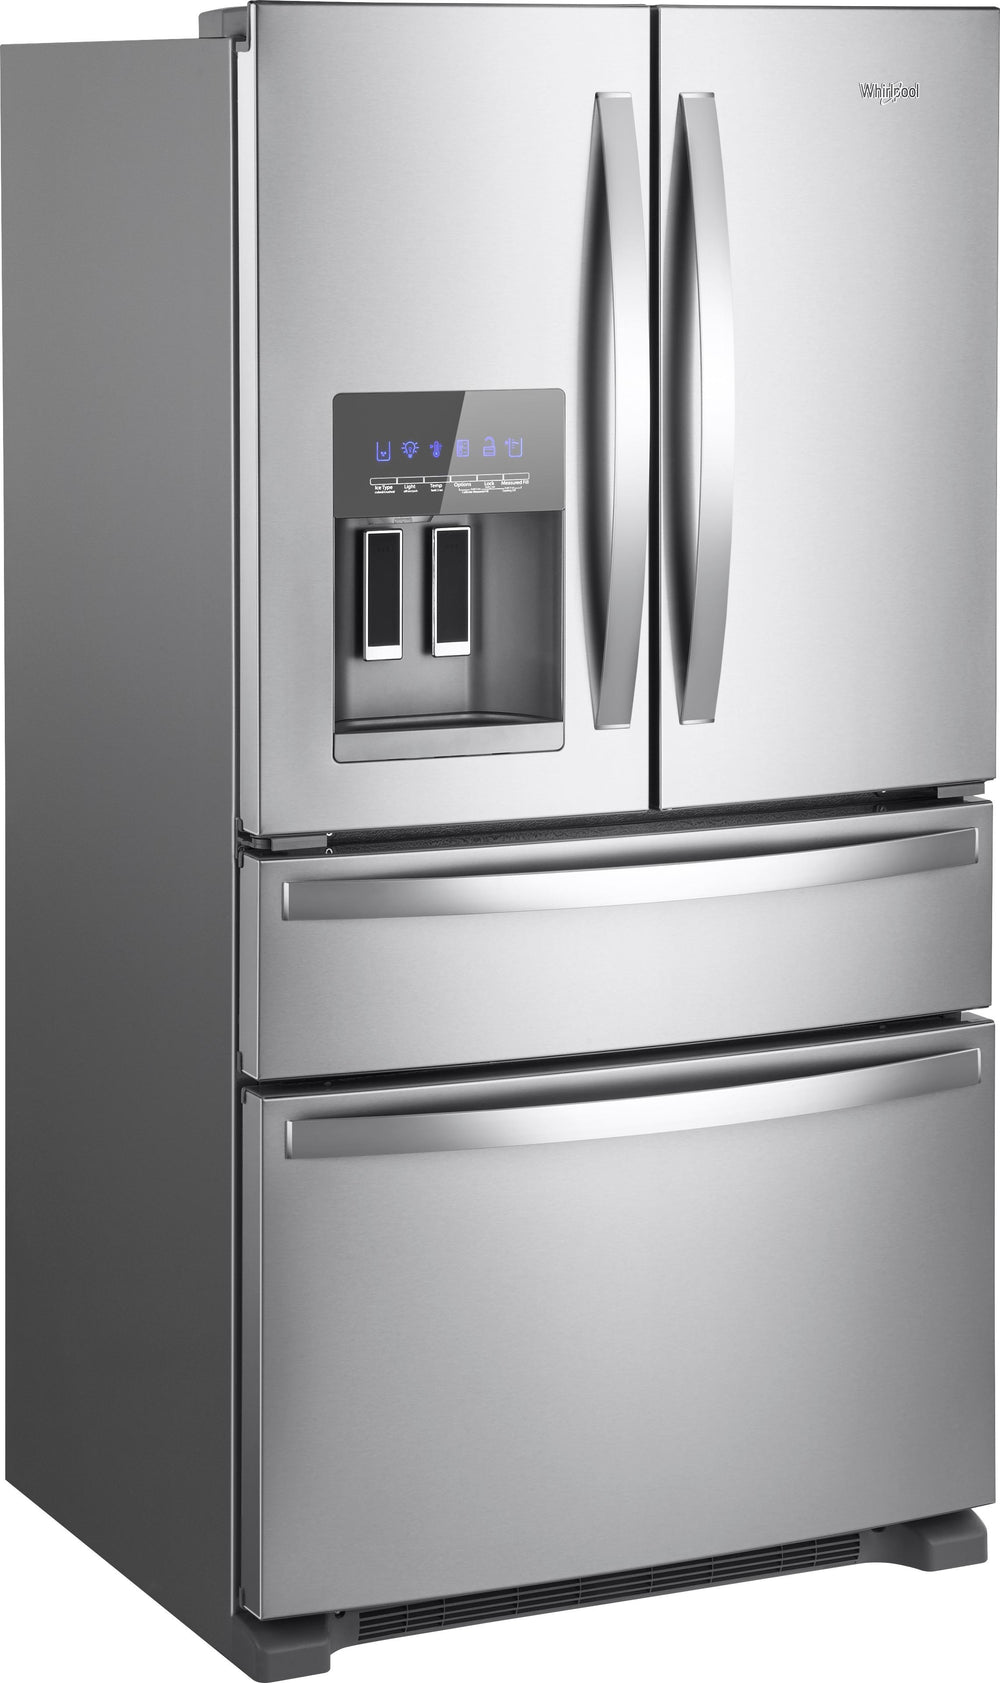 Whirlpool - 24.5 Cu. Ft. 4-Door French Door Refrigerator - Stainless steel_1